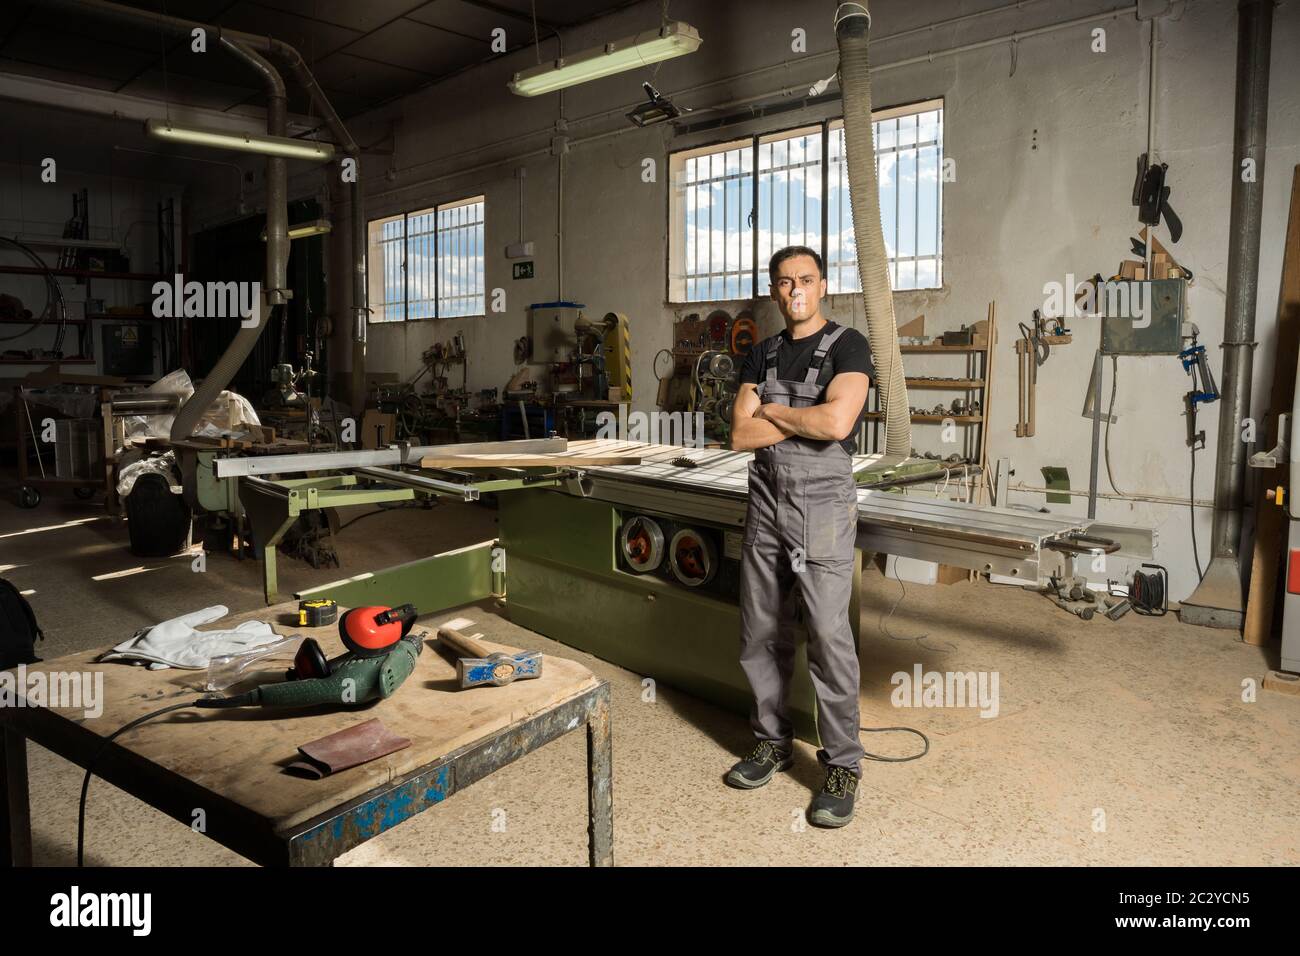 Un employé qui regarde la caméra sourire dans une usine. Photo longue, corps entier. Banque D'Images